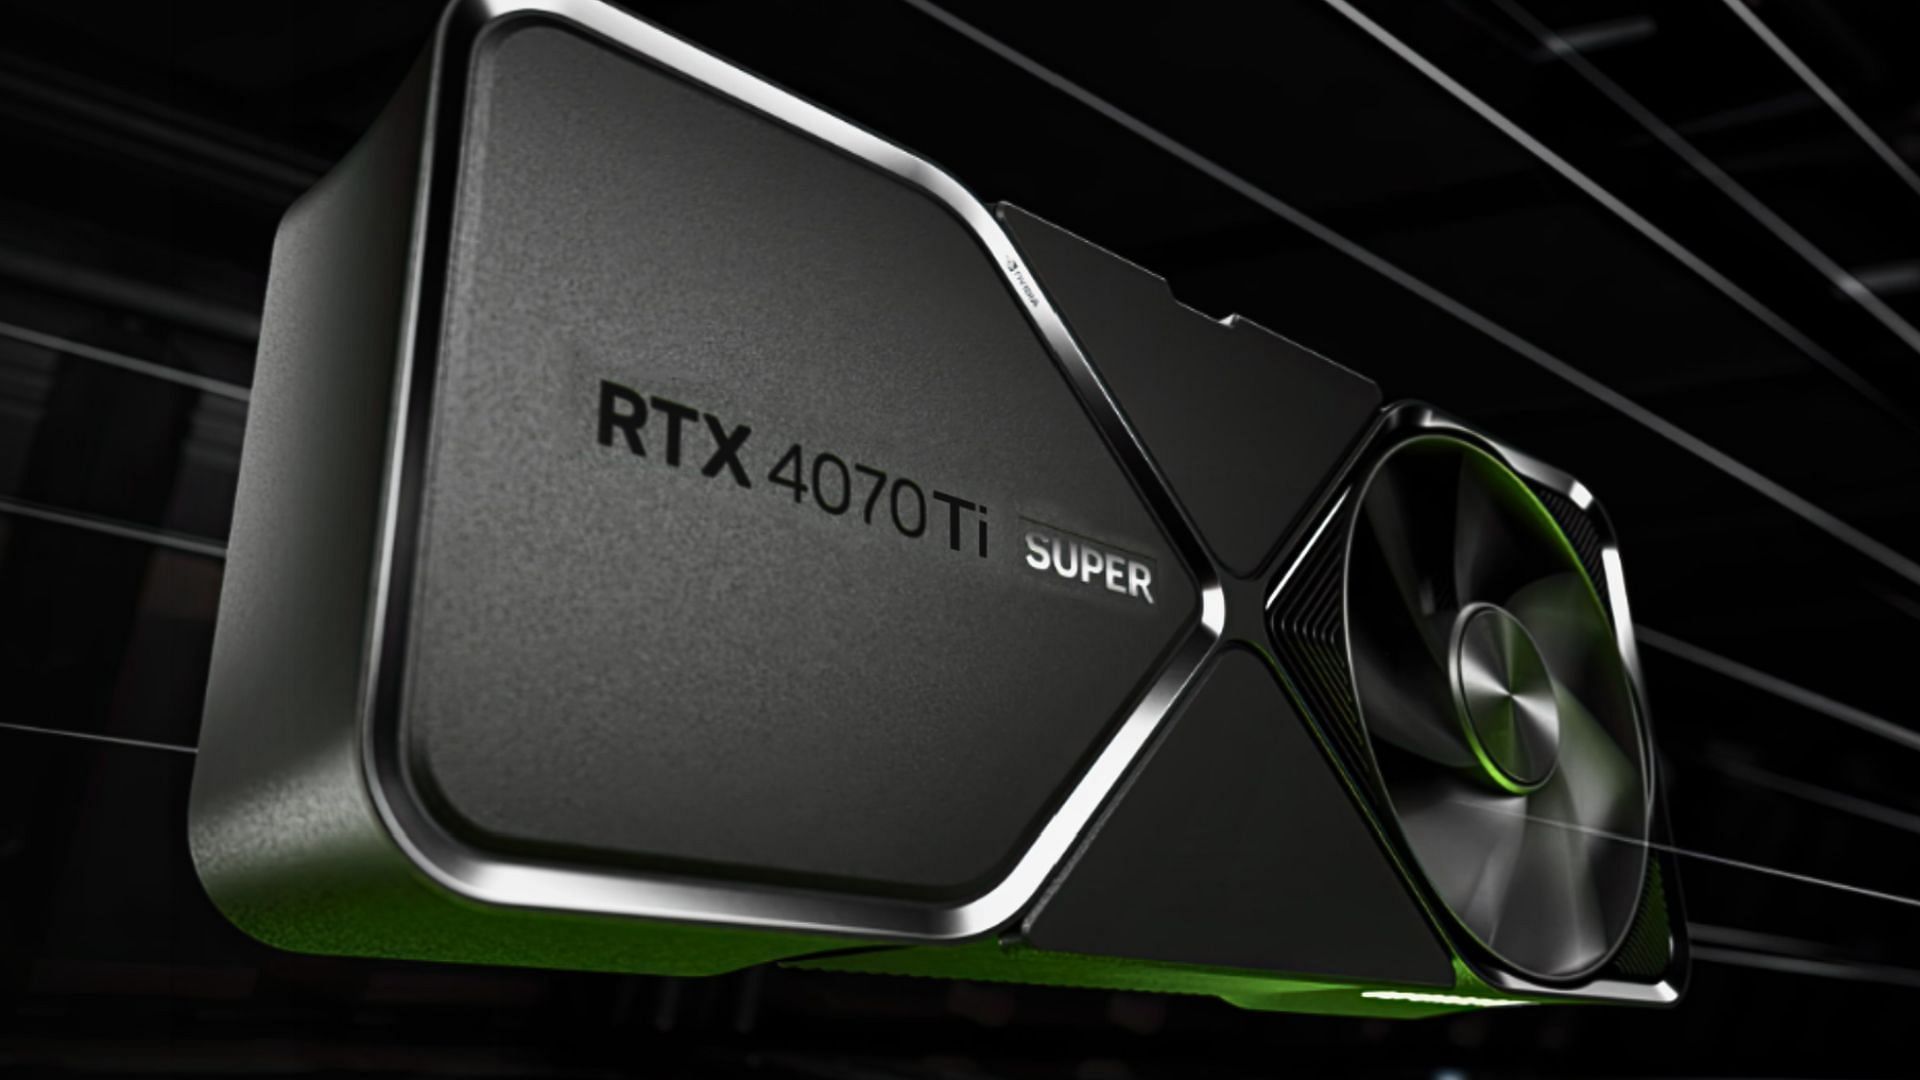 RTX 4070 Ti Super graphics card